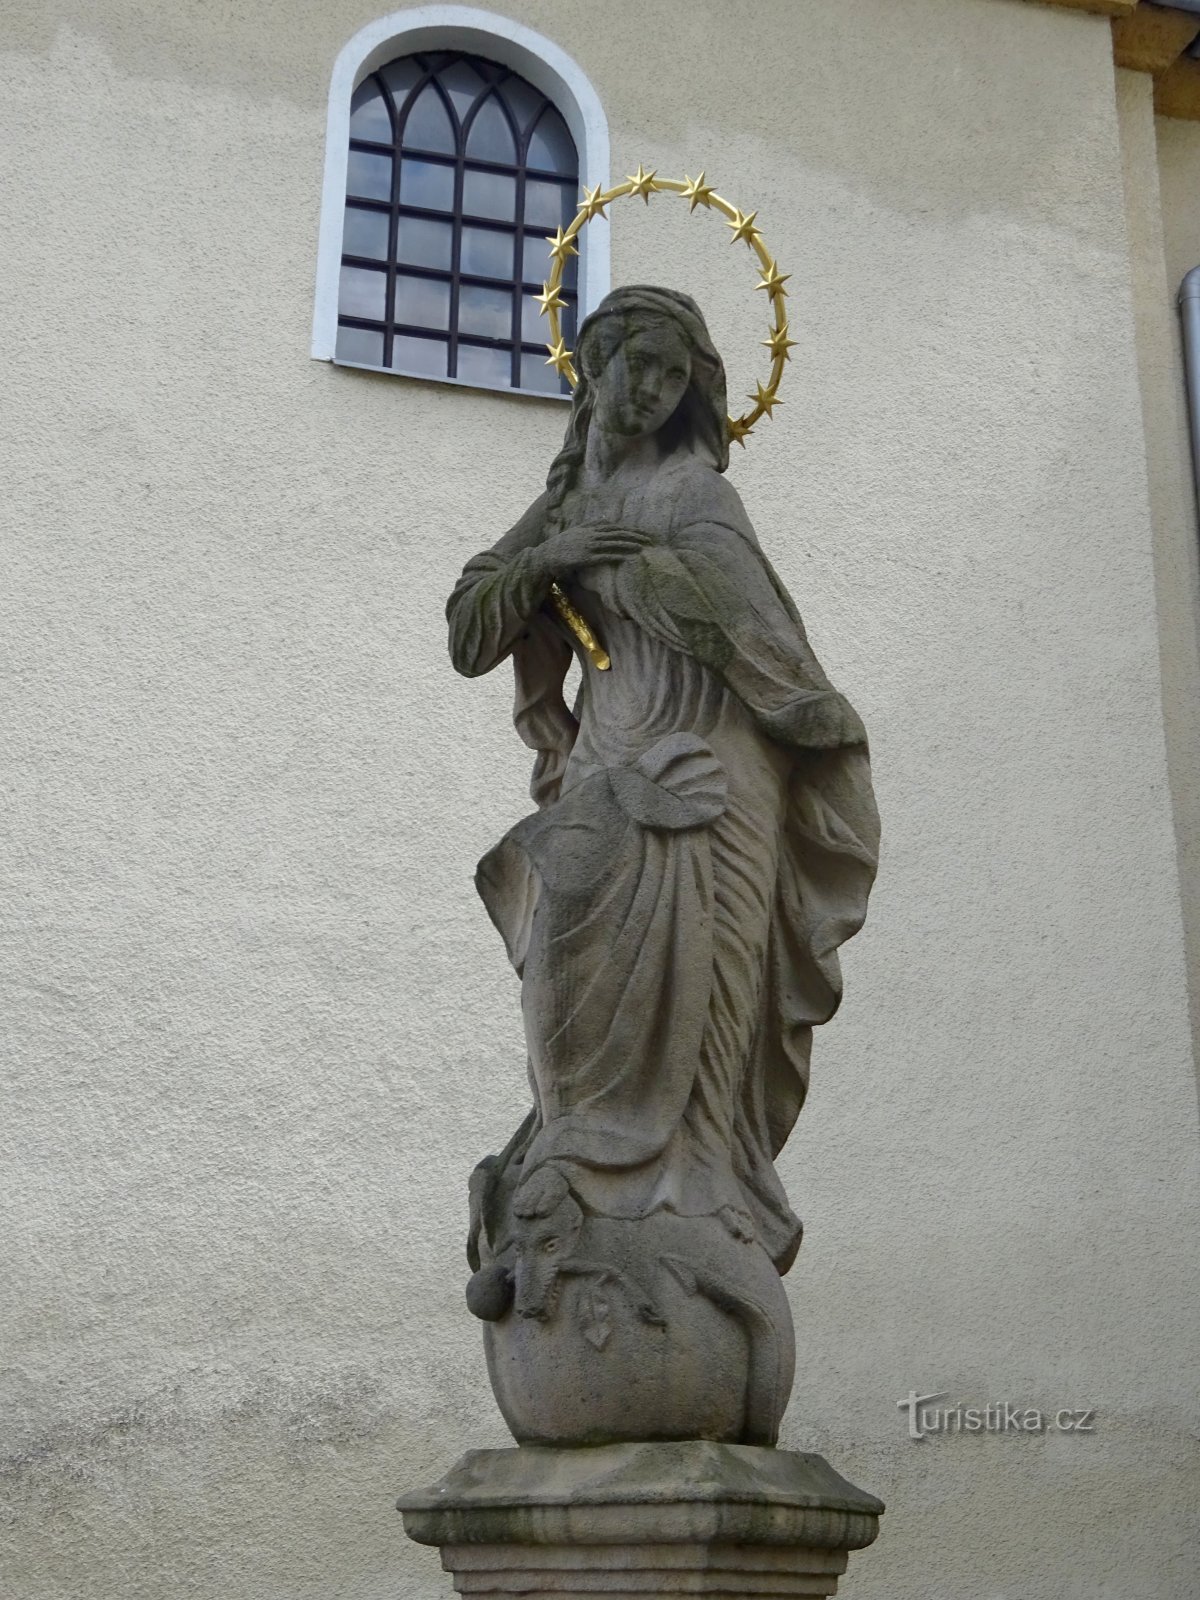 Klimkovice - kip Djevice Marije